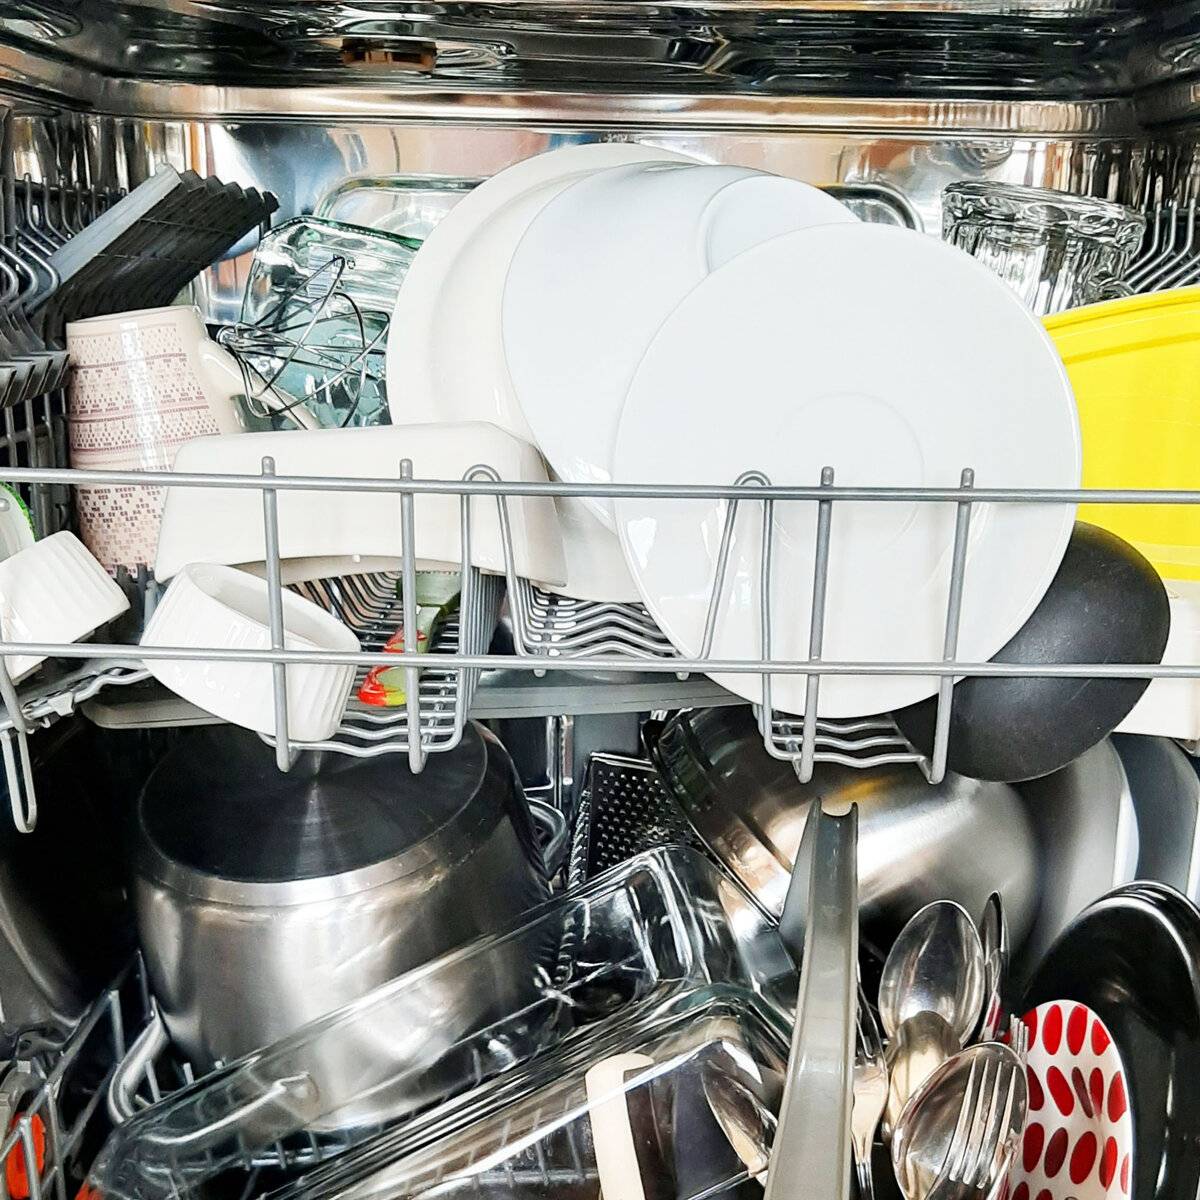 Можно мыть сковороду в посудомойке. Посуда в посудомойке. Загрузка посуды в посудомоечную машину. Правильная загрузка посуды в посудомоечную машину. Кастрюли в посудомойке.